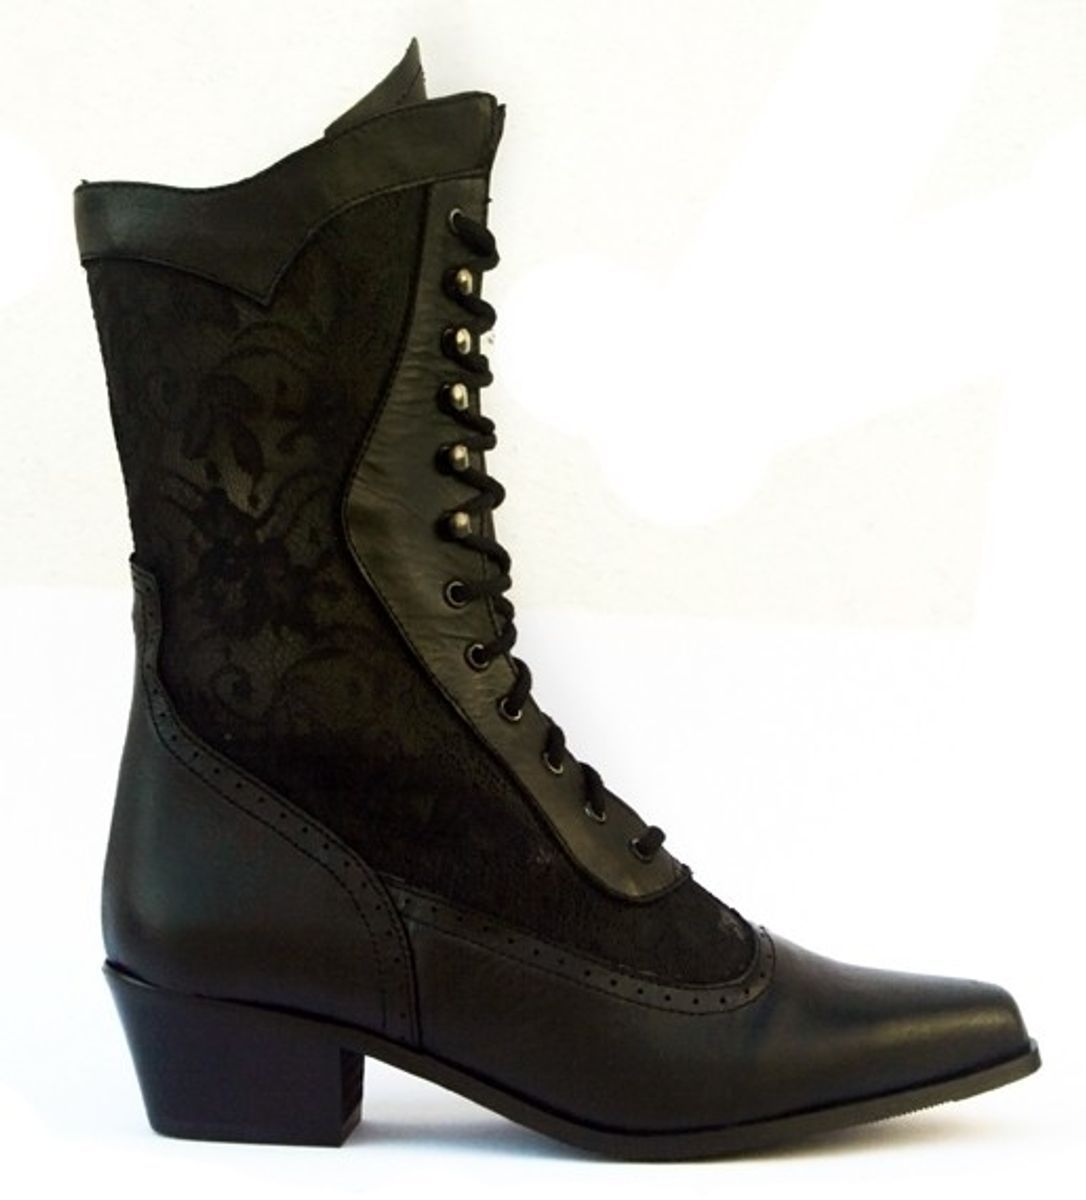 Størrelse: 36-41, varenummer: Cathedral Black leather, pris: 1500,-